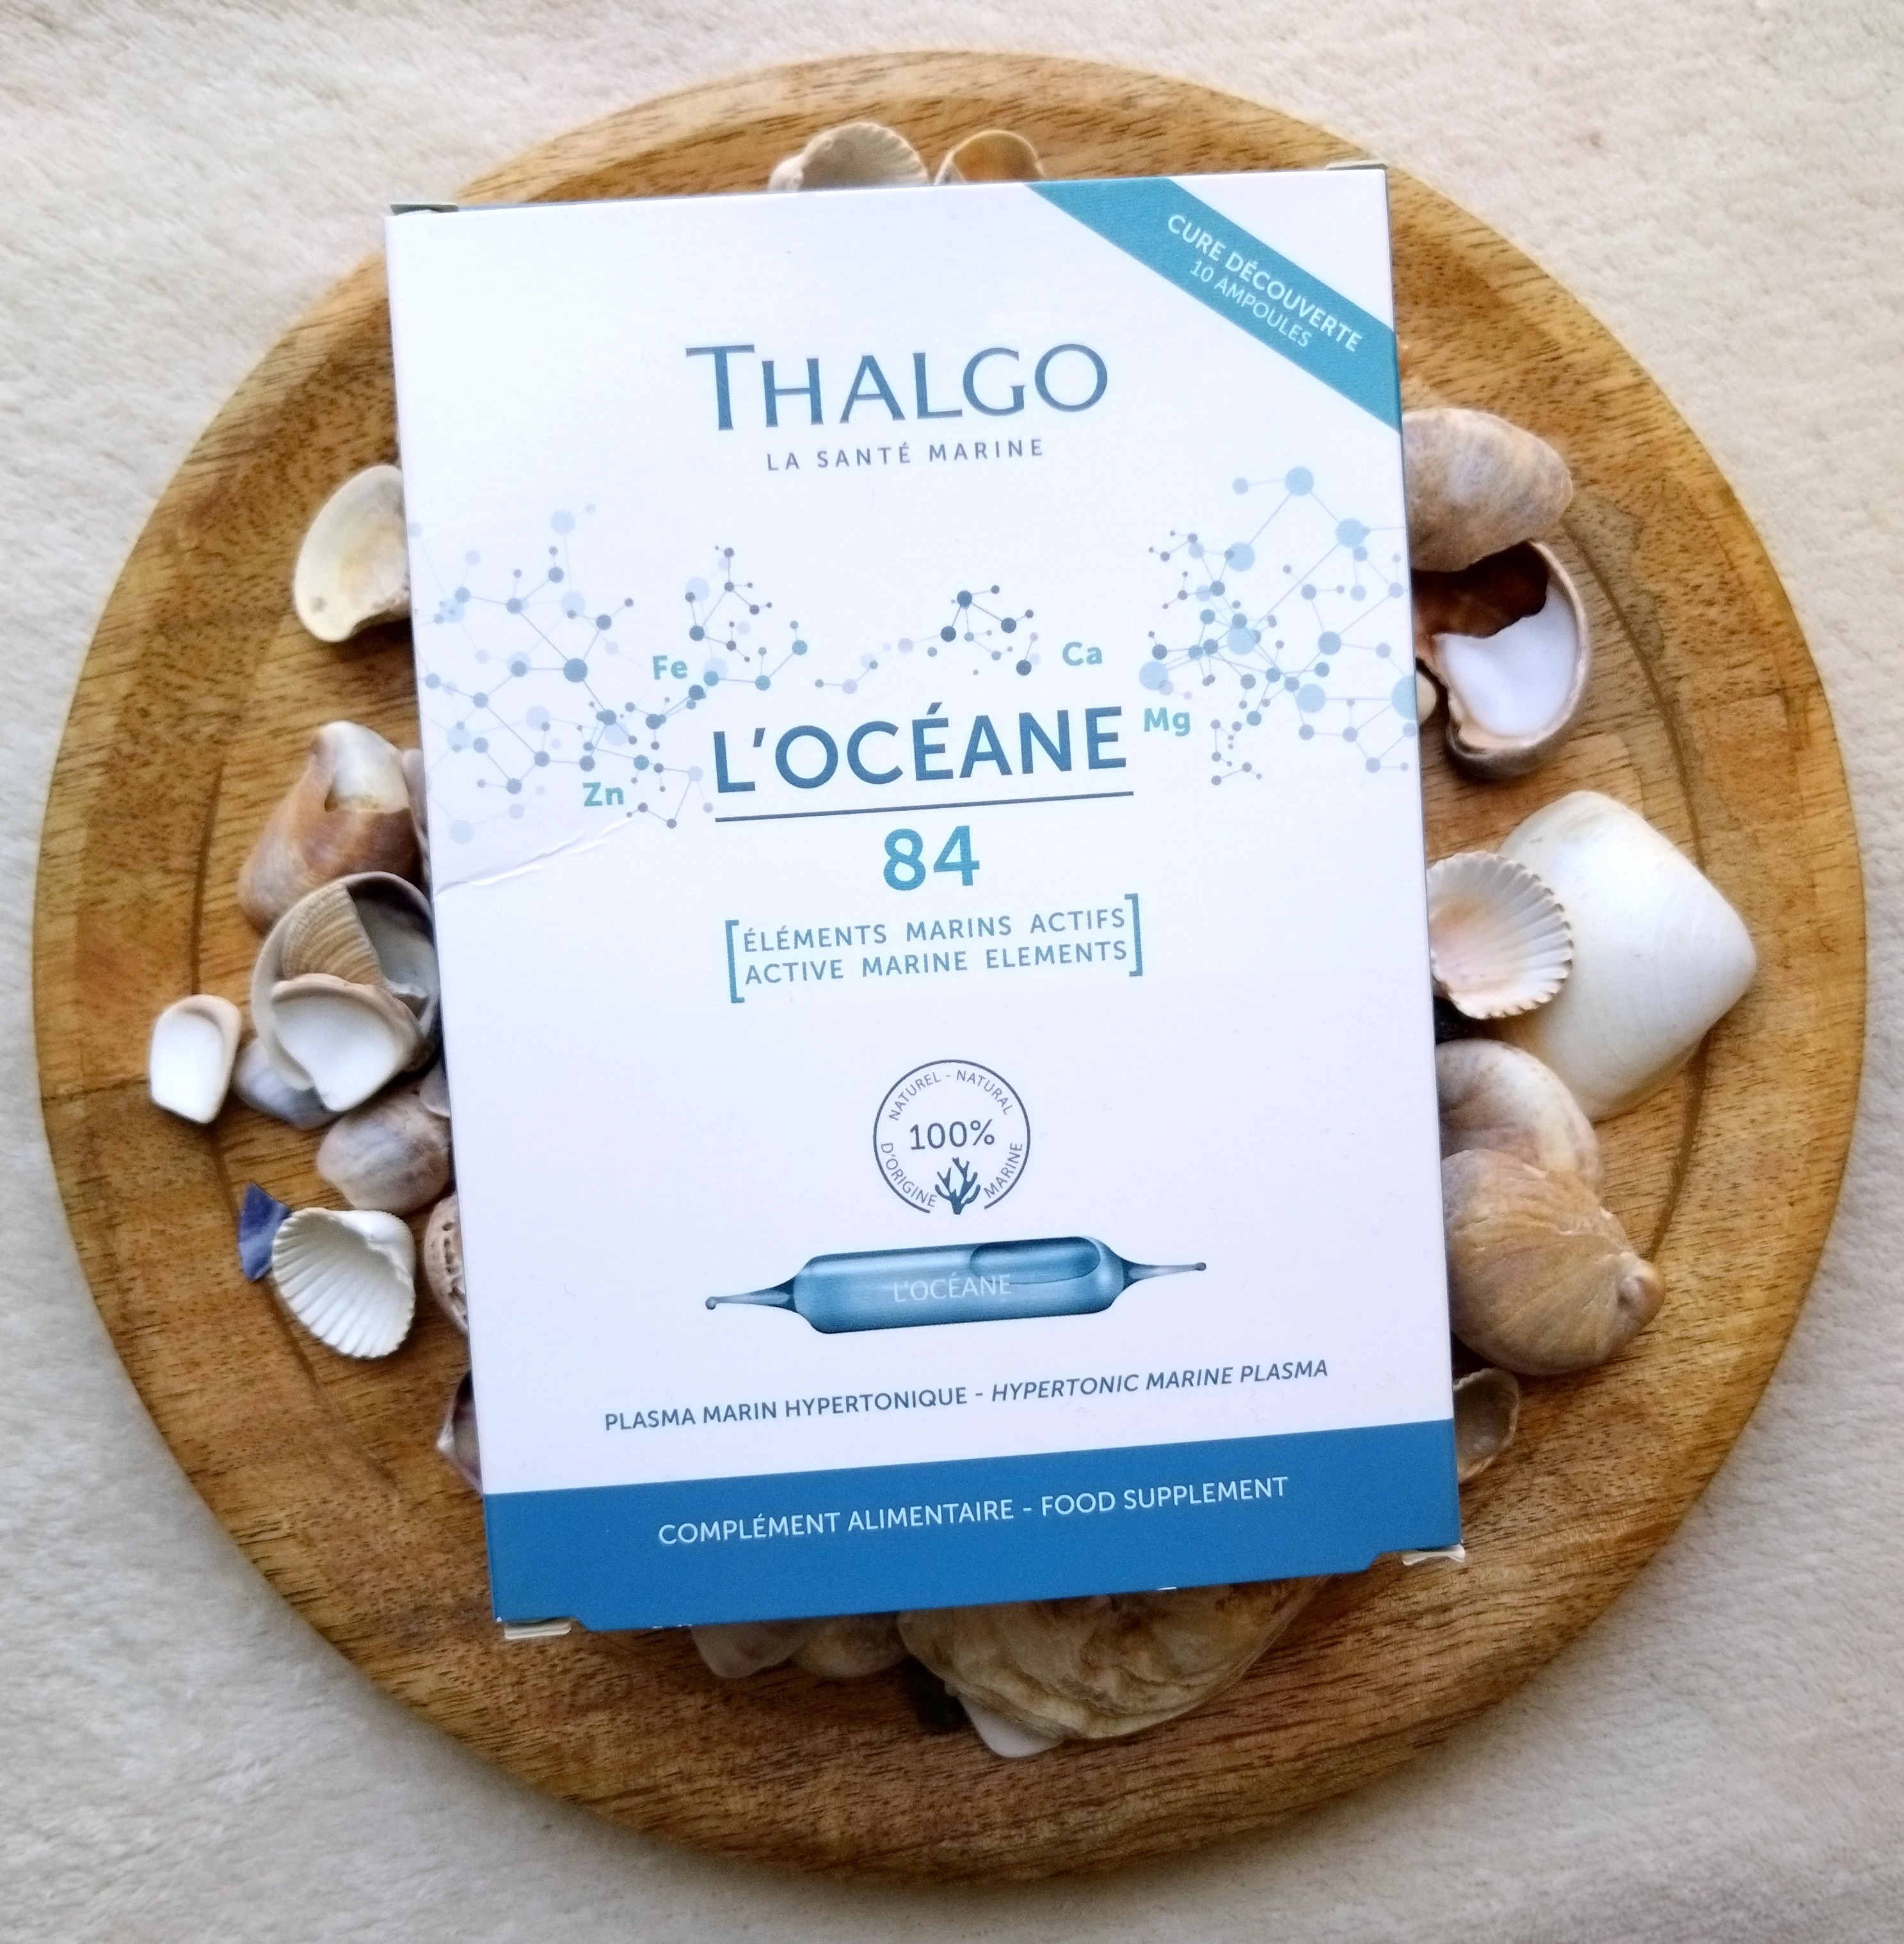 L'Océane de THALGO : Un intrigant complément alimentaire au Plasma marin hypertonique 🤔